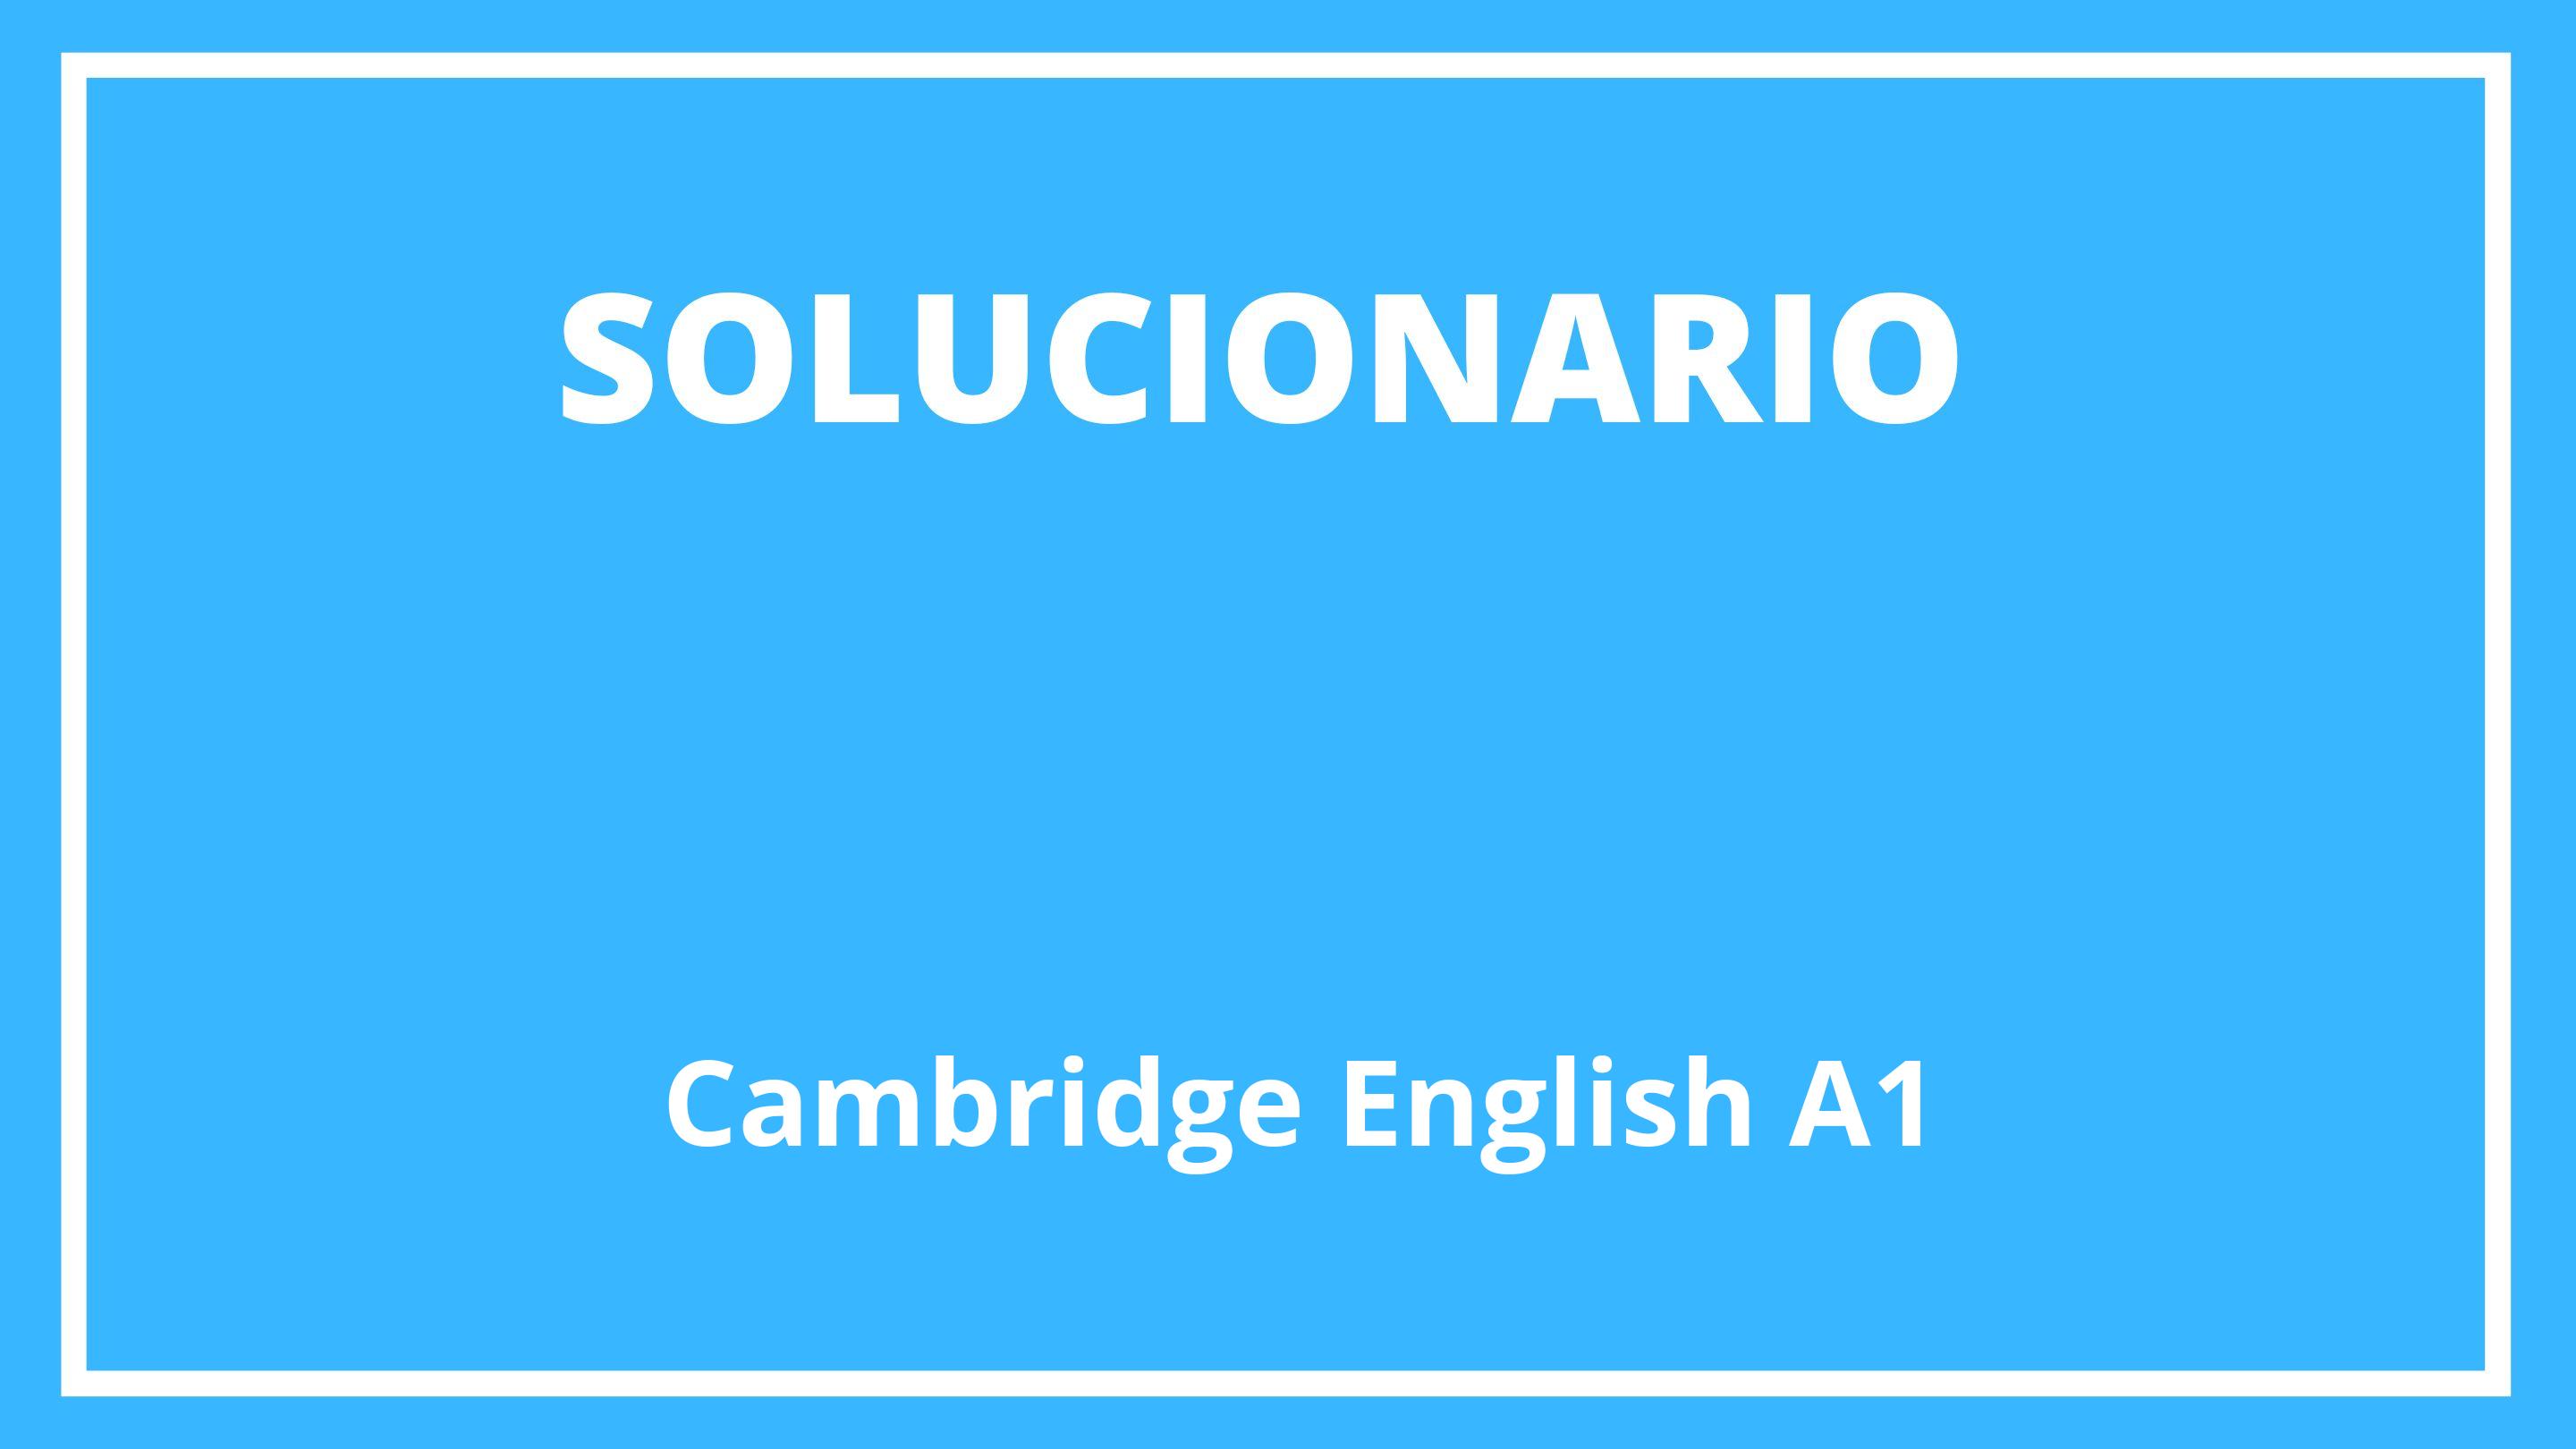 Solucionario Cambridge English A1